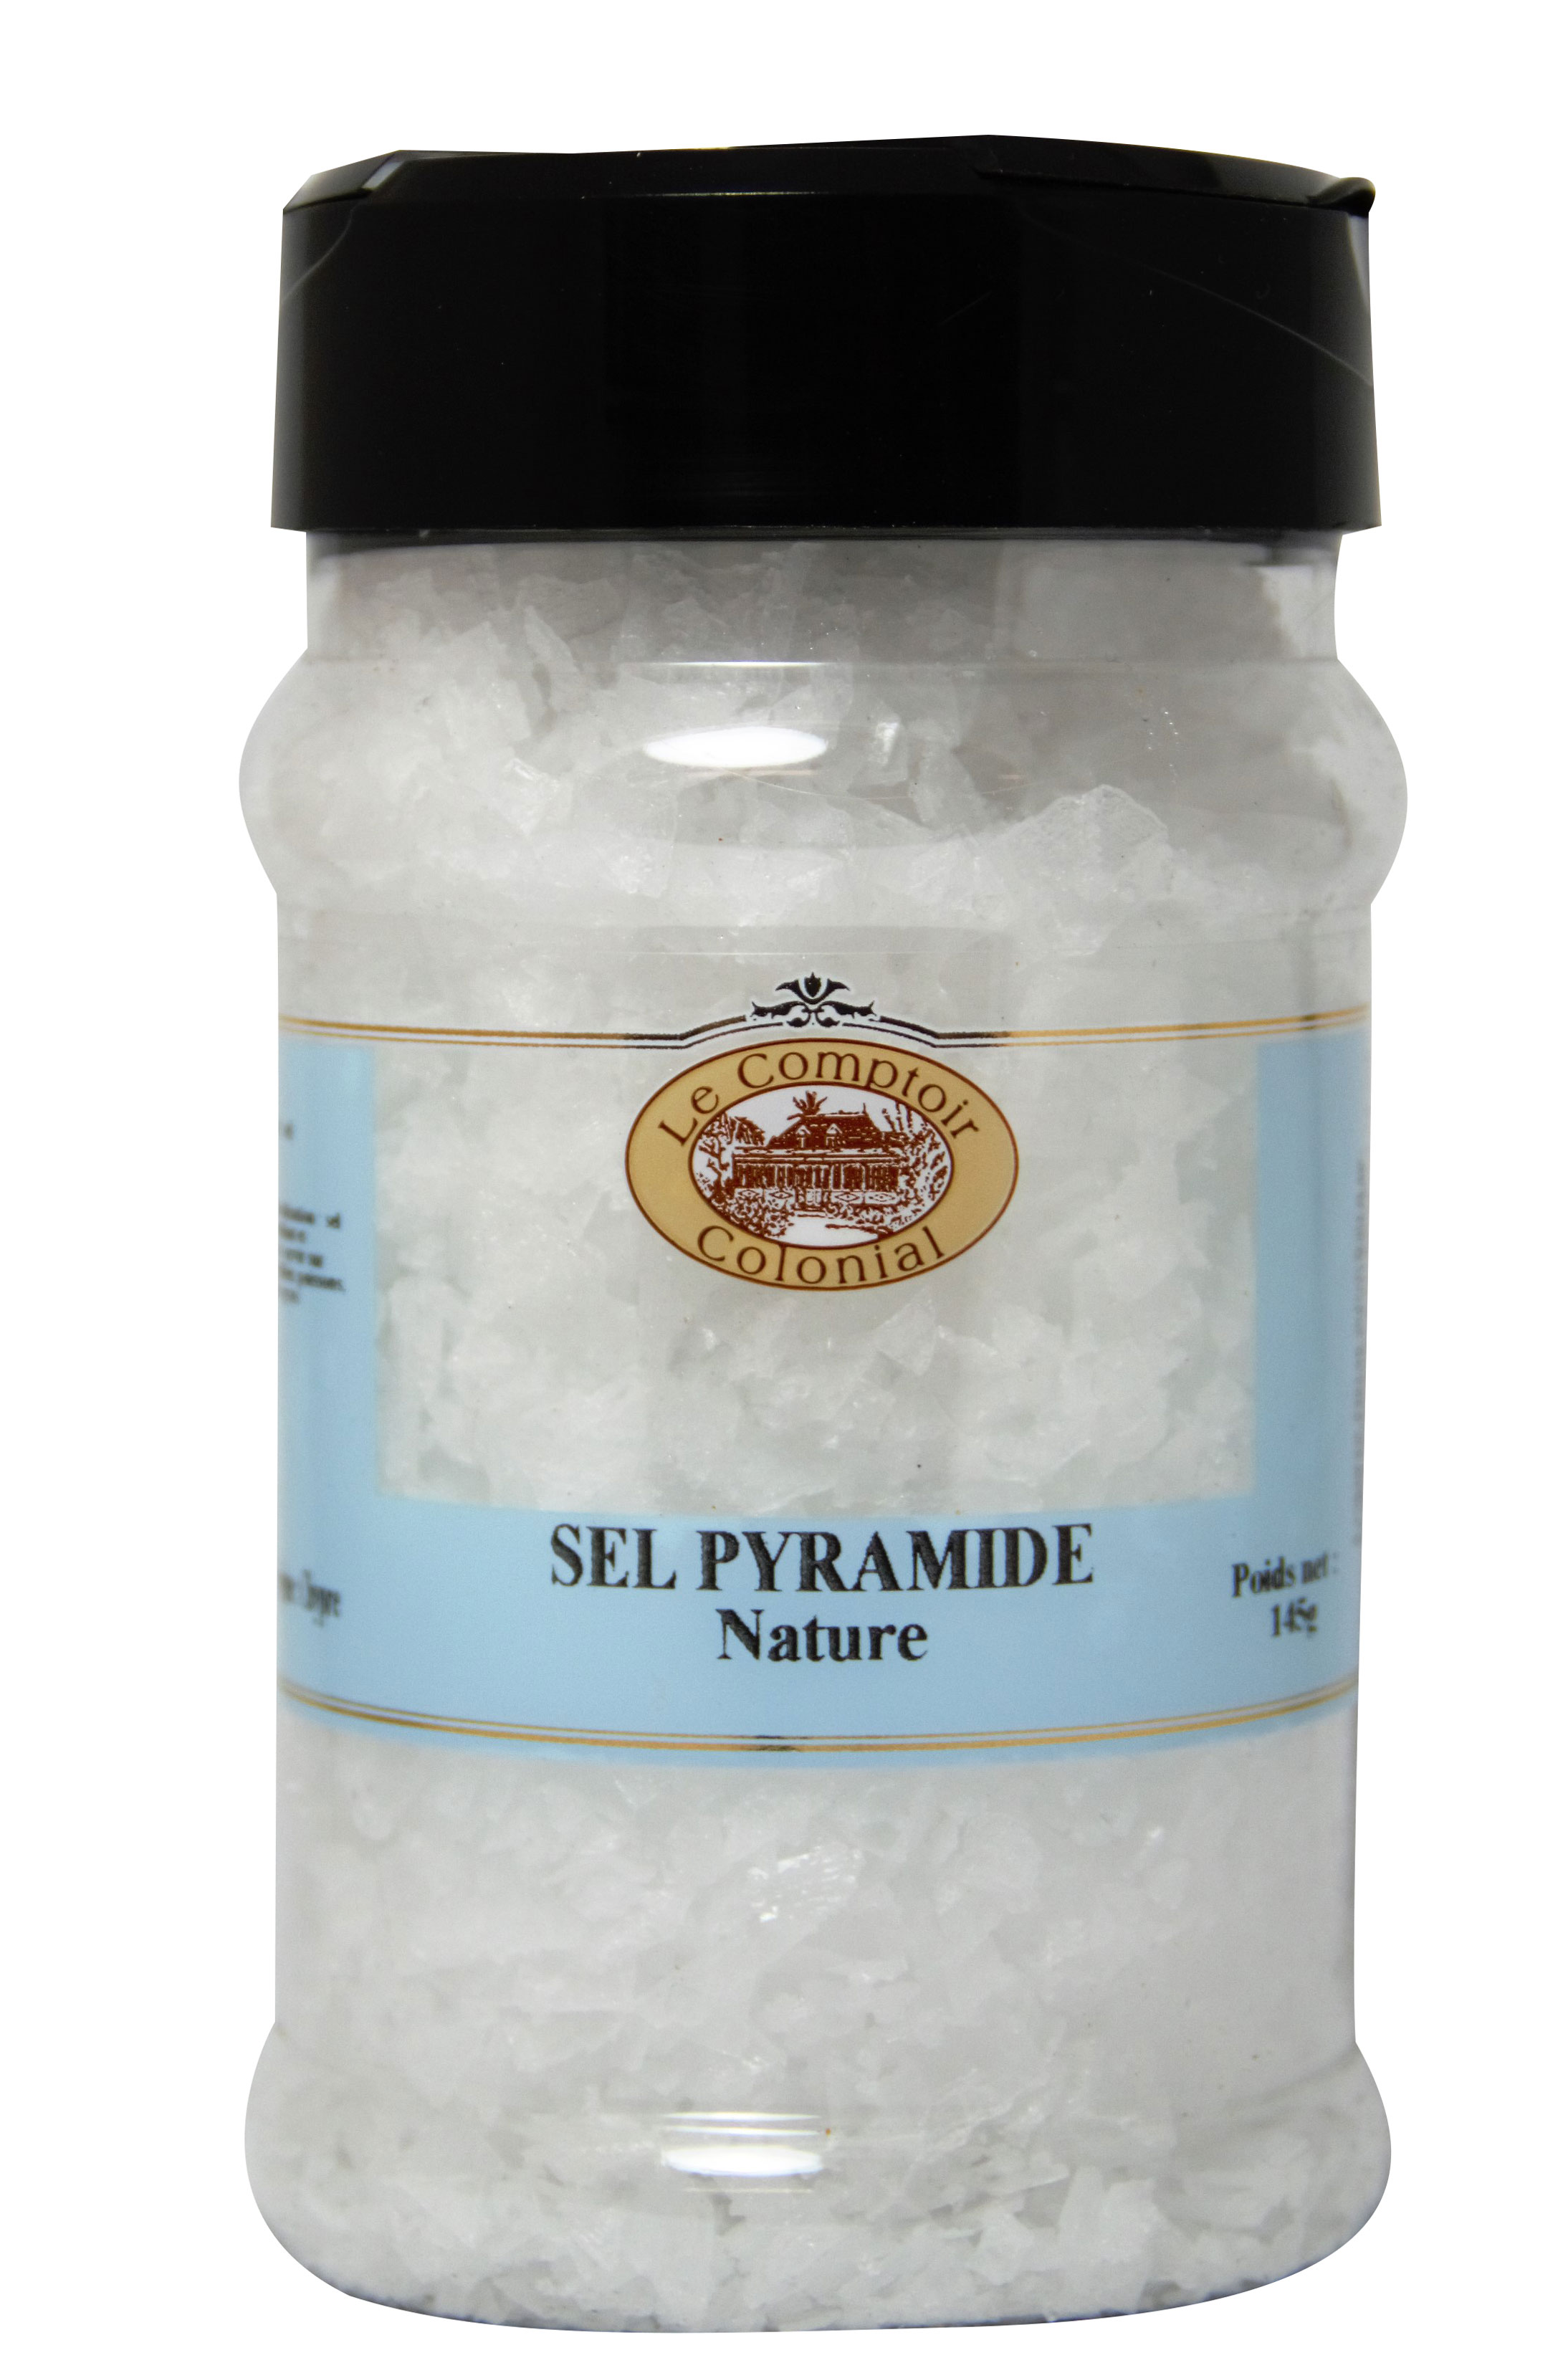 Le sel - Tout sur le sel, histoire, variétés, usage en cuisine et